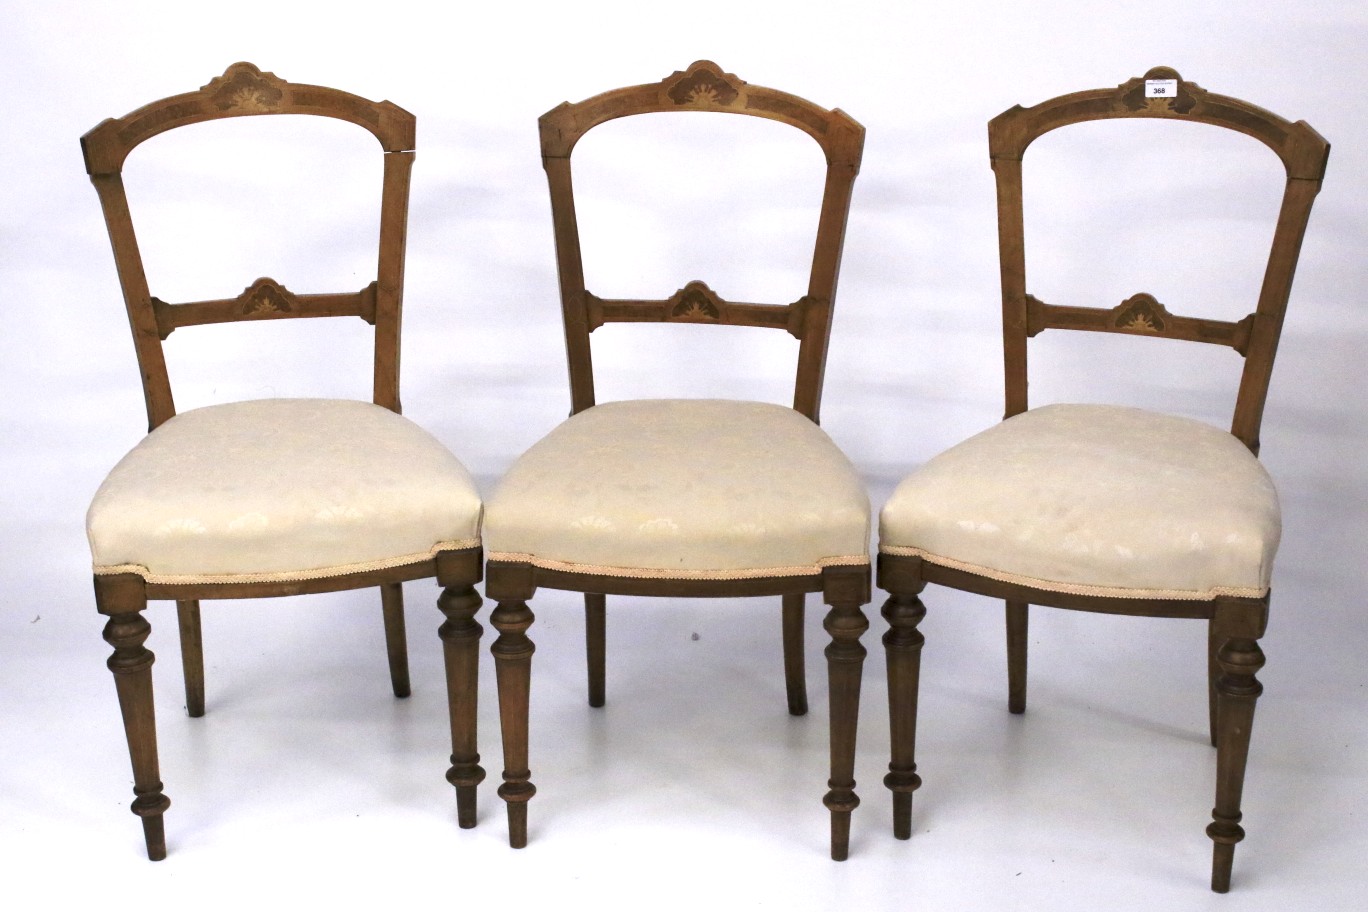 A set of three inlaid mahogany upholster